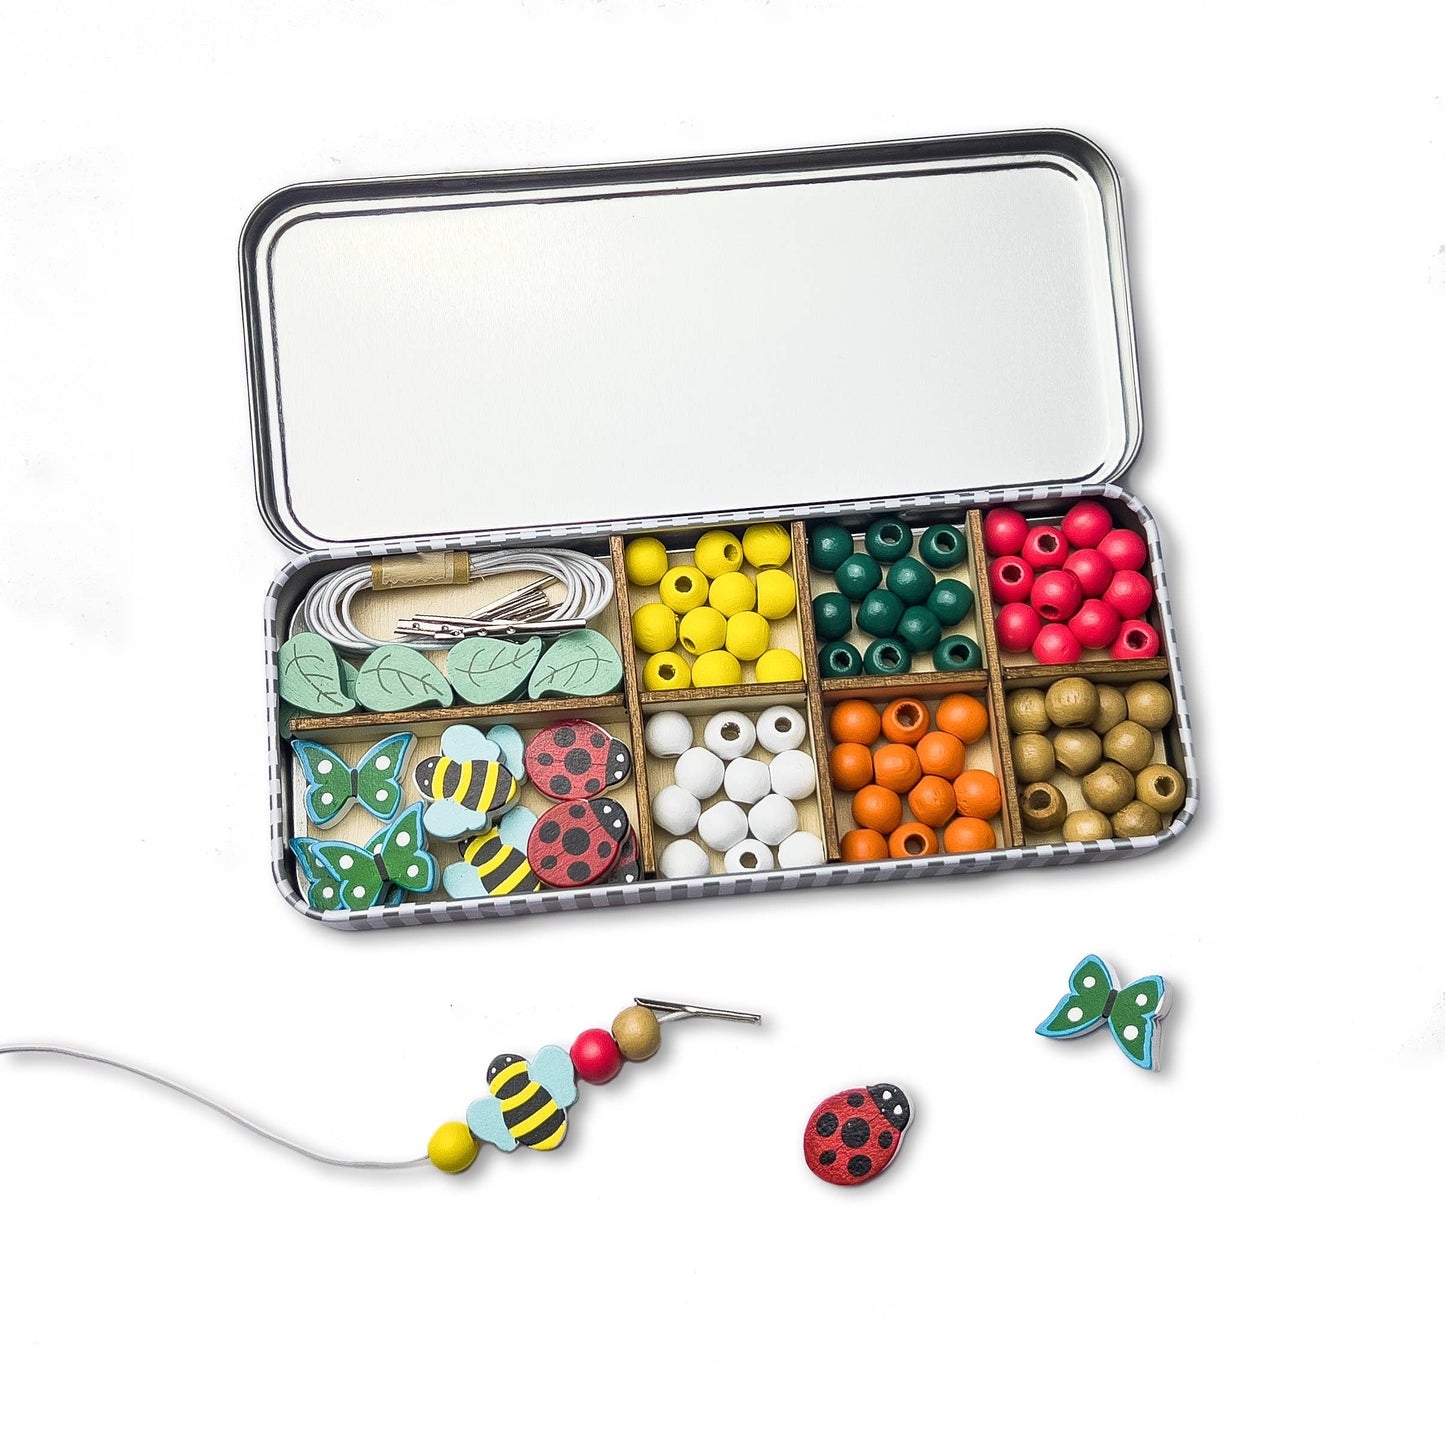 Minibeast Bracelet Bead Kit